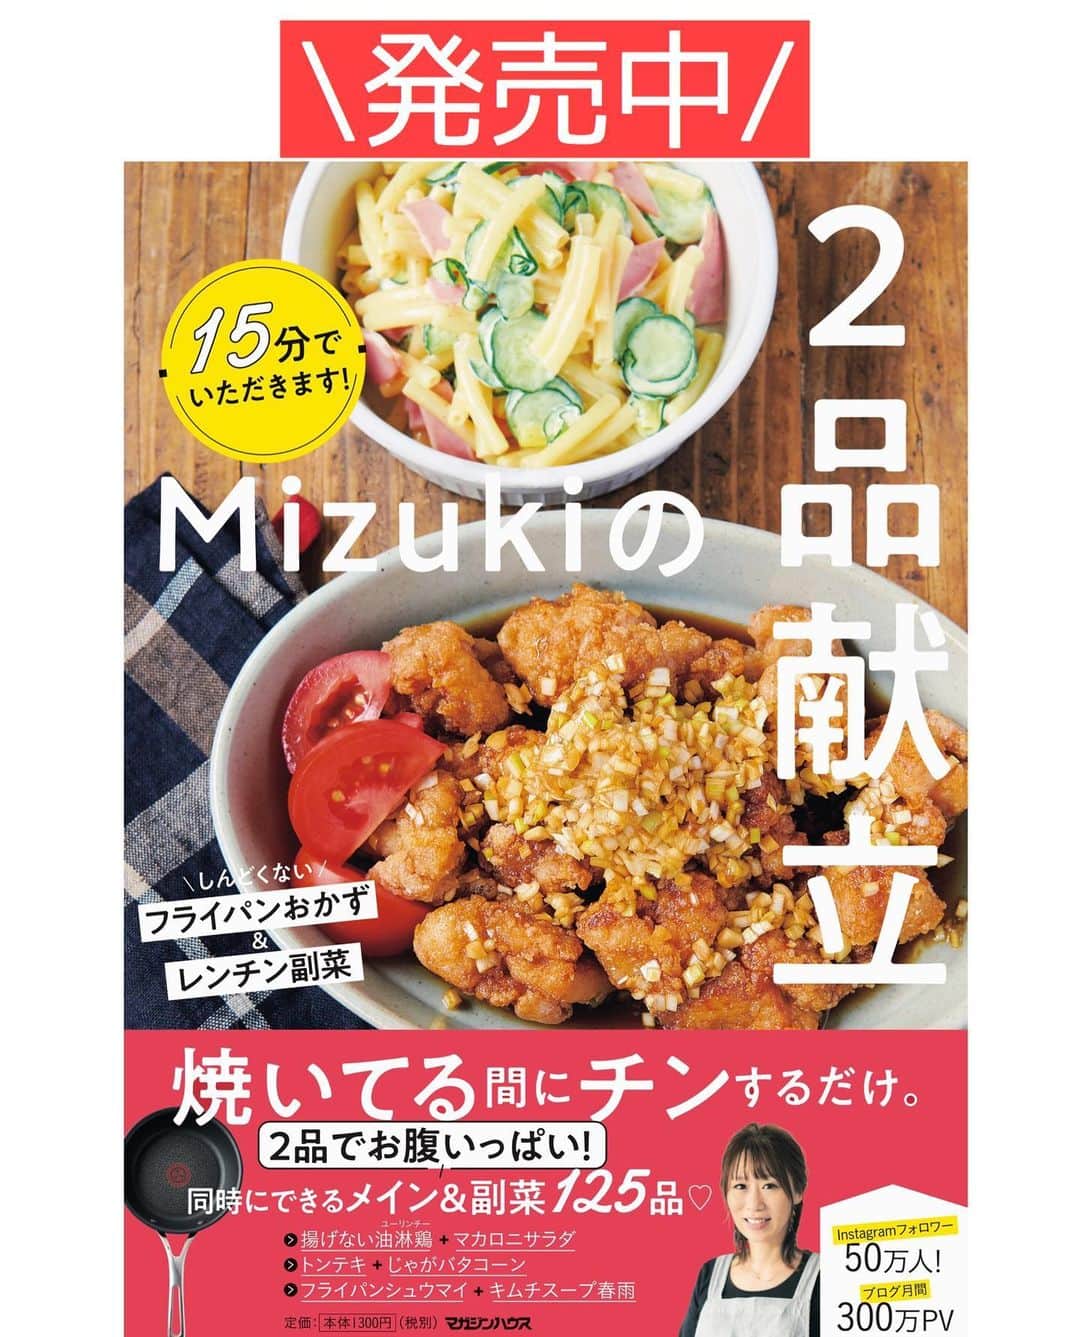 Mizuki【料理ブロガー・簡単レシピ】さんのインスタグラム写真 - (Mizuki【料理ブロガー・簡単レシピ】Instagram)「・﻿ 【#レシピ 】ーーーーーーーーーーーーーーー﻿ 戻さないから超簡単！ひき肉と白菜の春雨煮﻿ (2品献立提案あり)﻿ ーーーーーーーーーーーーーーーーーーーーー﻿ ﻿ ﻿ ﻿ おはようございます(*^^*)﻿ ﻿ 今日ご紹介させていただくのは﻿ 和風味の春雨煮♡﻿ 具はひき肉と白菜でコスパ抜群！﻿ しかも春雨は戻さず使える﻿ 超〜簡単レシピです(*´艸`)﻿ 旨味満点のスープを吸って﻿ とっても美味しく仕上がりますよー♡﻿ ﻿ フライパンひとつでできるので﻿ お気軽にお試し下さいね(*^^*)﻿ ﻿ ﻿ ﻿ ＿＿＿＿＿＿＿＿＿＿＿＿＿＿＿＿＿＿＿＿﻿ 【2人分】﻿ 豚ひき肉...100g﻿ 白菜...1/5株(300g)﻿ 春雨...40g﻿ ごま油...小1﻿ ●水...200ml﻿ ●酒...大2﻿ ●醤油...大1.5﻿ ●砂糖...大1/2﻿ ﻿ 1.白菜の芯は1cm幅に、葉はざく切りにする。春雨は長ければ半分に切る。﻿ 2.フライパンにごま油を中火で熱し、ひき肉と白菜の芯を入れ、白菜の芯がしんなりするまで炒める。﻿ 3.●、春雨、白菜の葉を加え、混ぜながら4分程炒め煮する。﻿ ￣￣￣￣￣￣￣￣￣￣￣￣￣￣￣￣￣￣￣￣﻿ ﻿ ﻿ ﻿ 《ポイント》﻿ ♦︎鶏ひき肉で作っても♩﻿ ♦︎春雨は煮汁に浸かるようにして炒め煮して下さい♩﻿ ♦︎春雨の種類によってまだ硬い場合は適量水を加えて煮込み時間を長めにして下さい☆﻿ ﻿ ﻿ ﻿ ﻿ ﻿ ﻿ ﻿ ＿＿＿＿＿＿＿＿＿＿＿＿＿＿＿＿＿﻿ 🥣🥣🥣 2品献立提案 🥣🥣🥣﻿ ￣￣￣￣￣￣￣￣￣￣￣￣￣￣￣￣￣﻿ 【合間に作れるおすすめ副菜】﻿ >じゃがバタコーン(P.17)﻿ >にんじんマカロニサラダ(P.89)﻿ (#Mizukiの2品献立 より)﻿ ﻿ 【献立の段取り】﻿ 副菜をレンジにかけてからメインを作る🥢﻿ ￣￣￣￣￣￣￣￣￣￣￣￣￣￣￣￣￣﻿ ﻿ ﻿ ﻿ ﻿ ﻿ ﻿ ⭐️発売中⭐️3刷重版が決まりました😭﻿ 本当にありがとうございます(涙)﻿ _____________________________________﻿ \15分でいただきます/﻿ 📕#Mizukiの2品献立 📕﻿ (9月24日発売・マガジンハウス)﻿ ￣￣￣￣￣￣￣￣￣￣￣￣￣￣￣￣￣﻿ ﻿ 忙しい私たちには﻿ 2品くらいがちょうどいい！﻿ 『しんどくない献立、考えました』﻿ ￣￣￣￣￣￣￣￣￣￣￣￣￣￣￣￣﻿ ﻿ ーーーーーPART.1 ーーーーー﻿ 【Mizukiのお墨つき！２品献立ベスト10】﻿ 約15分でできる10献立をご紹介！﻿ メインは全部フライパン、副菜はレンチンor混ぜるだけ♡﻿ ﻿ ーーーーーPART.2 ーーーーー﻿ 【フライパンひとつ！今夜のメインおかず】﻿ 献立の主役になる肉や魚のおかず50品！﻿ Part3の副菜と組み合わせれば﻿ 献立のバリエーションが広がりますよ♩﻿ ﻿ ーーーーー PART.3 ーーーーー﻿ 【合間に作れる！ 野菜別かんたん副菜】﻿ レンチンor和えるだけの副菜レシピを﻿ 素材別にたっぷり収録♩﻿ ﻿ ーーーーー番外編ーーーーー﻿ 【ひとつで満足！ご飯＆麺】﻿ 【具だくさん！おかずスープ】﻿ 【オーブンいらずのおやつレシピ】﻿ ￣￣￣￣￣￣￣￣￣￣￣￣￣￣￣￣￣￣﻿ (ハイライトにリンク🔗あります💗)﻿ ﻿ ﻿ ﻿ ﻿ ＿＿＿＿＿＿＿＿＿＿＿＿＿＿＿＿＿＿﻿ レシピを作って下さった際や﻿ レシピ本についてのご投稿には﻿ タグ付け( @mizuki_31cafe )して﻿ お知らせいただけると嬉しいです😊💕﻿ ￣￣￣￣￣￣￣￣￣￣￣￣￣￣￣￣￣￣﻿ ﻿ ﻿ ﻿ ﻿ #ひき肉#春雨#フライパン#Mizuki#簡単レシピ#時短レシピ#節約レシピ#料理#フーディーテーブル#マカロニメイト#おうちごはん#デリスタグラマー#料理好きな人と繋がりたい#食べ物#料理記録#おうちごはんlover#写真好きな人と繋がりたい#foodpic#cooking#recipe#lin_stagrammer#foodporn#yummy#f52grams#ひき肉と白菜の春雨煮m」11月9日 7時17分 - mizuki_31cafe